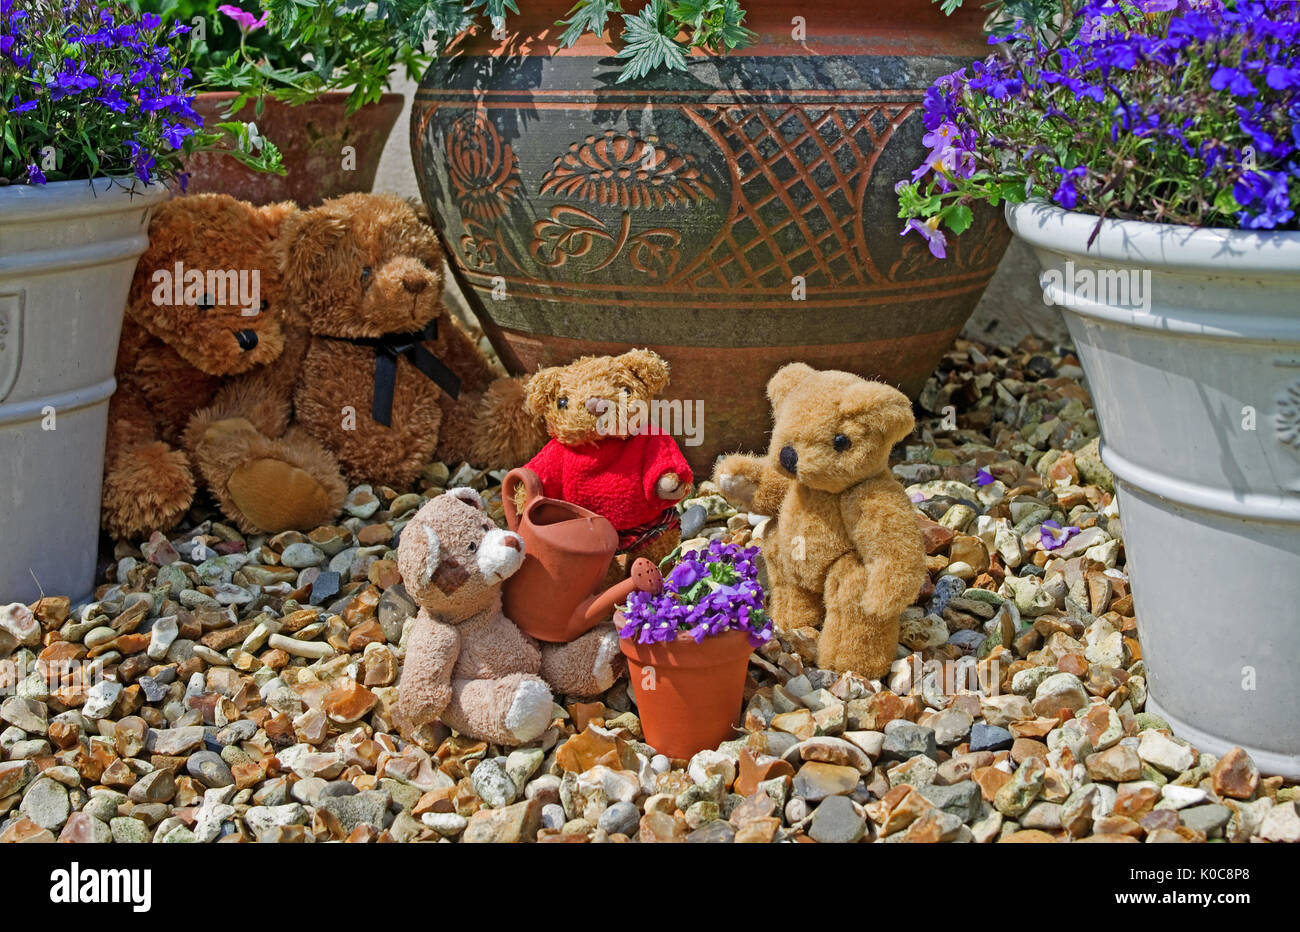 Tableau de jardin 3 petits teddies arroser une mini pot de fleurs avec de l'argile mini arrosoir, observé dans l'arrière-plan par 2 grands ours poilu. Banque D'Images